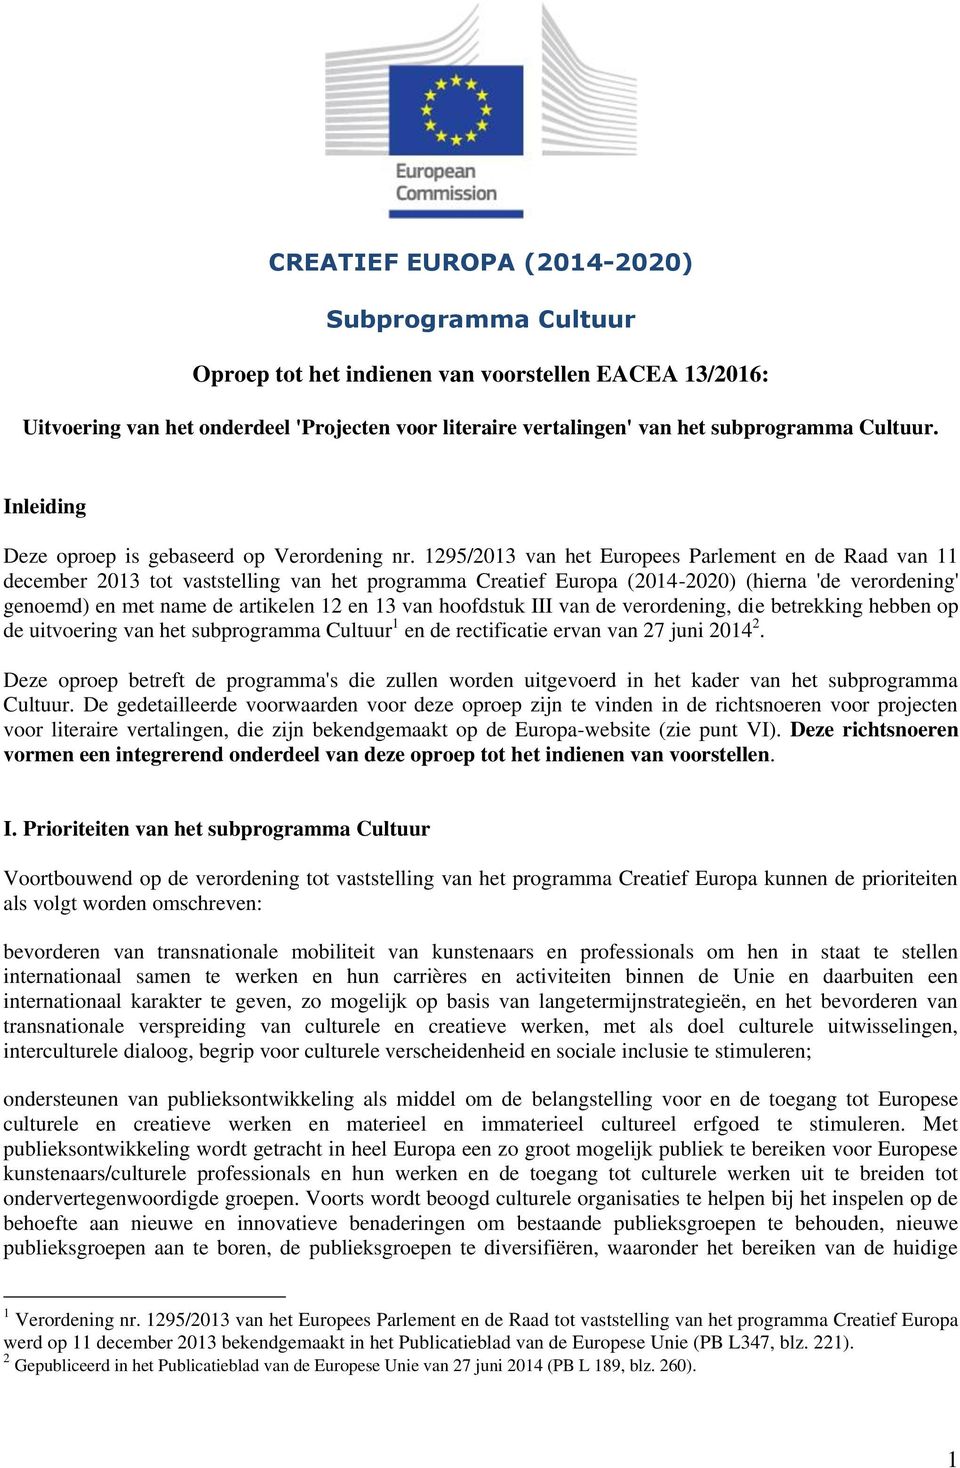 1295/2013 van het Europees Parlement en de Raad van 11 december 2013 tot vaststelling van het programma Creatief Europa (2014-2020) (hierna 'de verordening' genoemd) en met name de artikelen 12 en 13